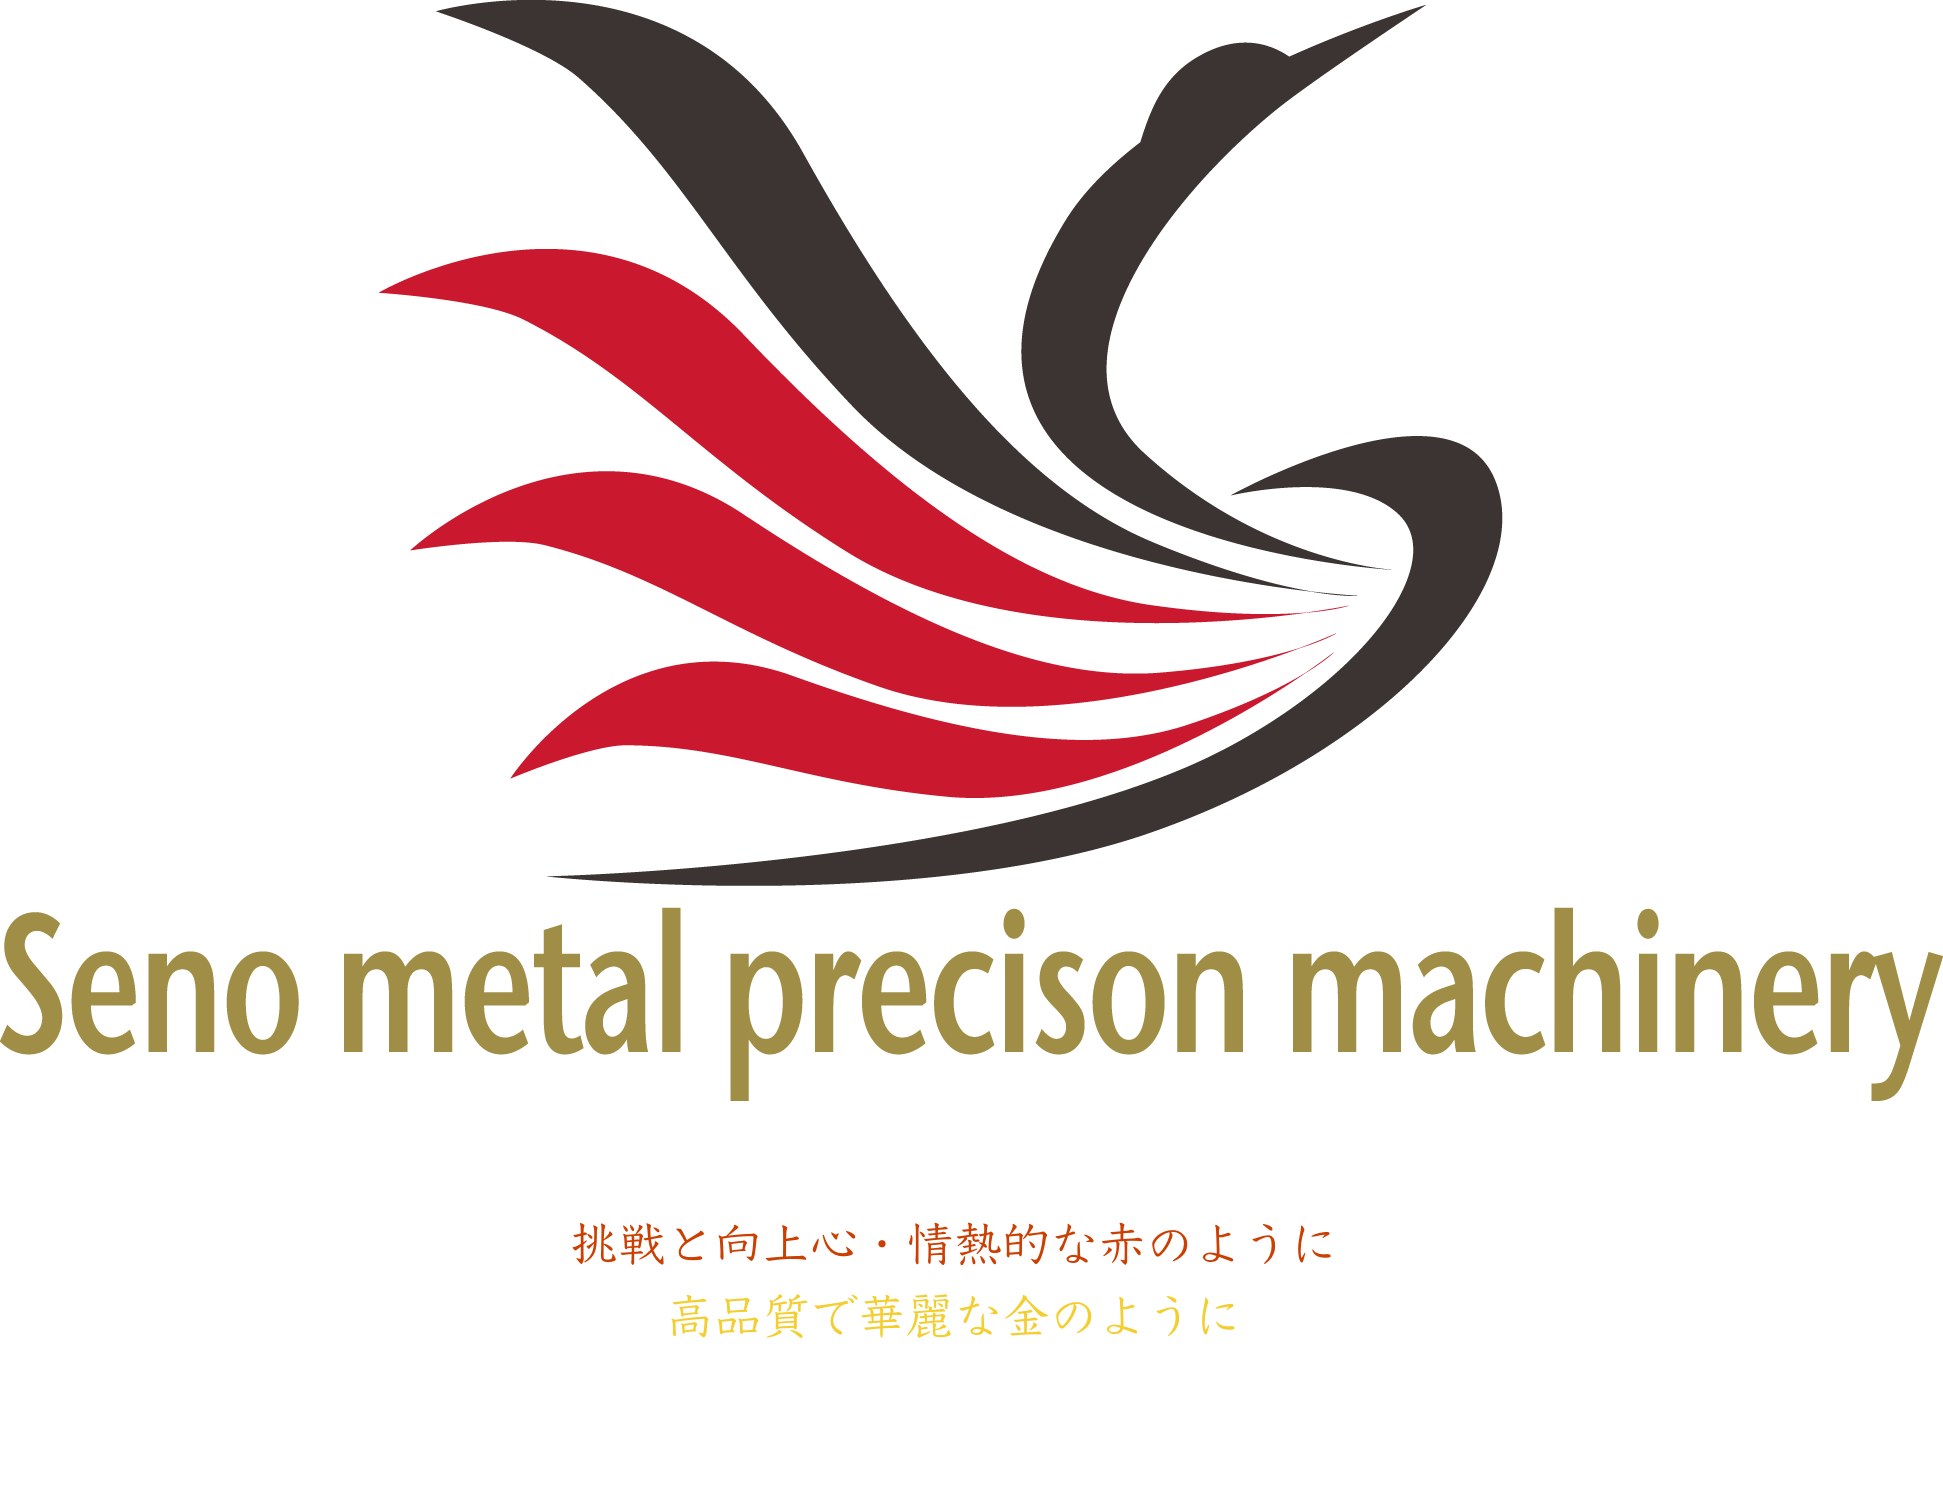 Seno metal precison machinery ロゴ